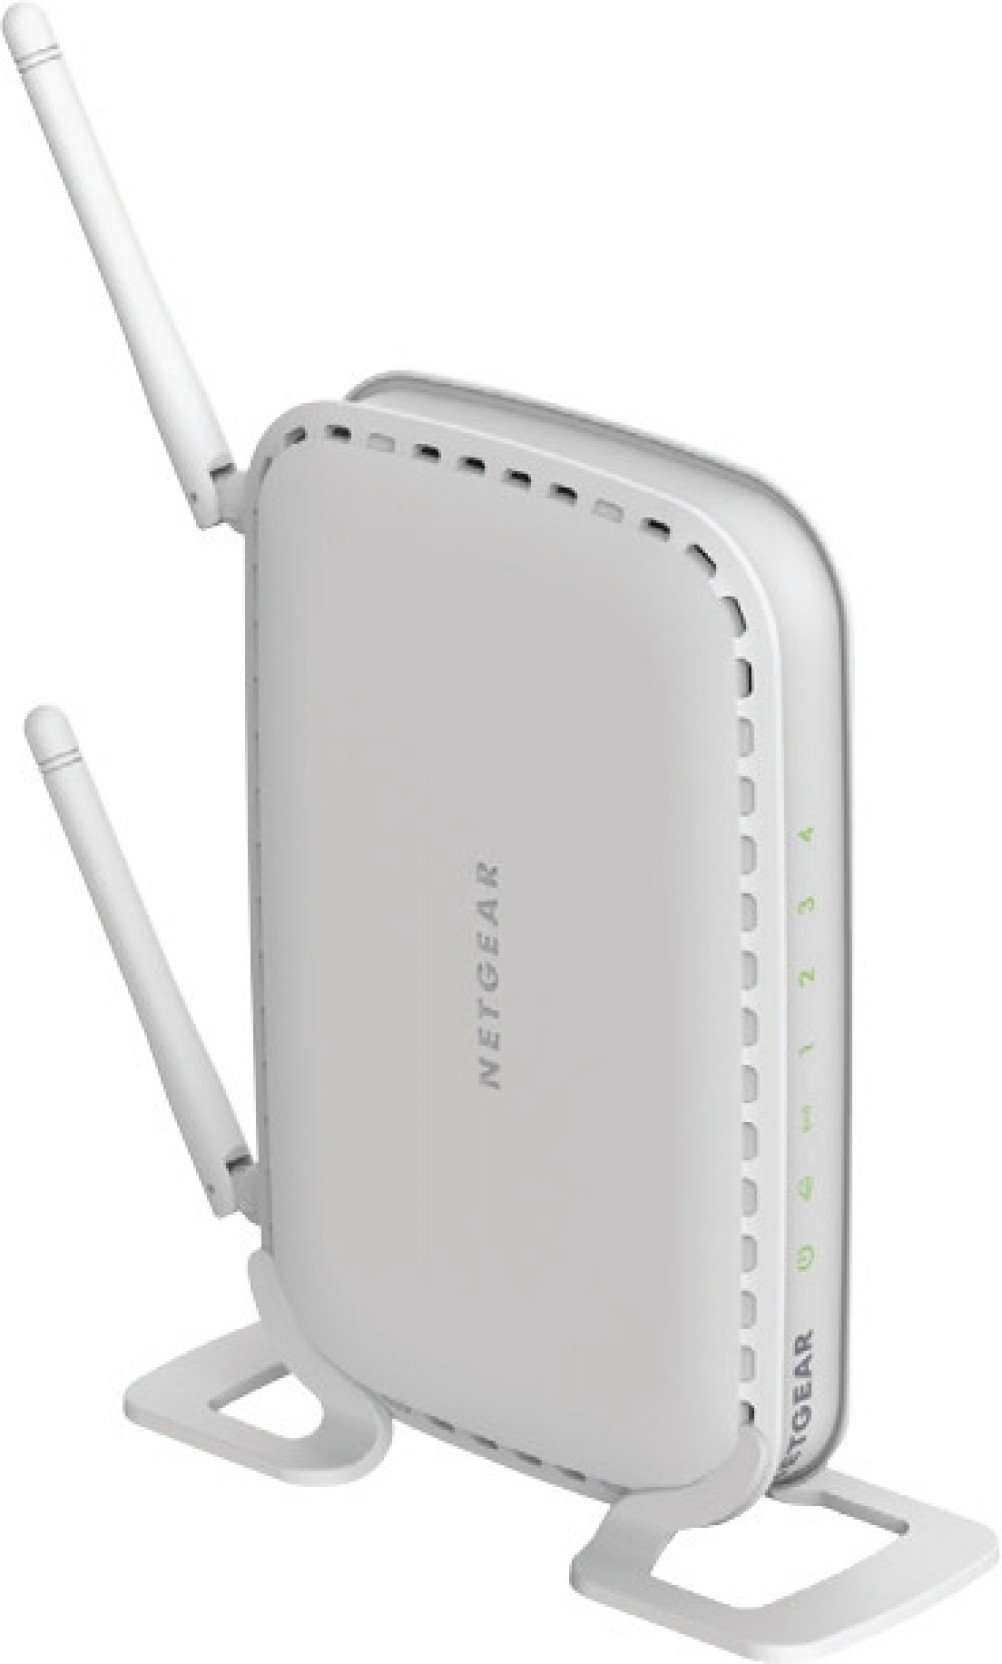 Netgear WNR614 Wireless N300 Router - Netgear : Flipkart.com